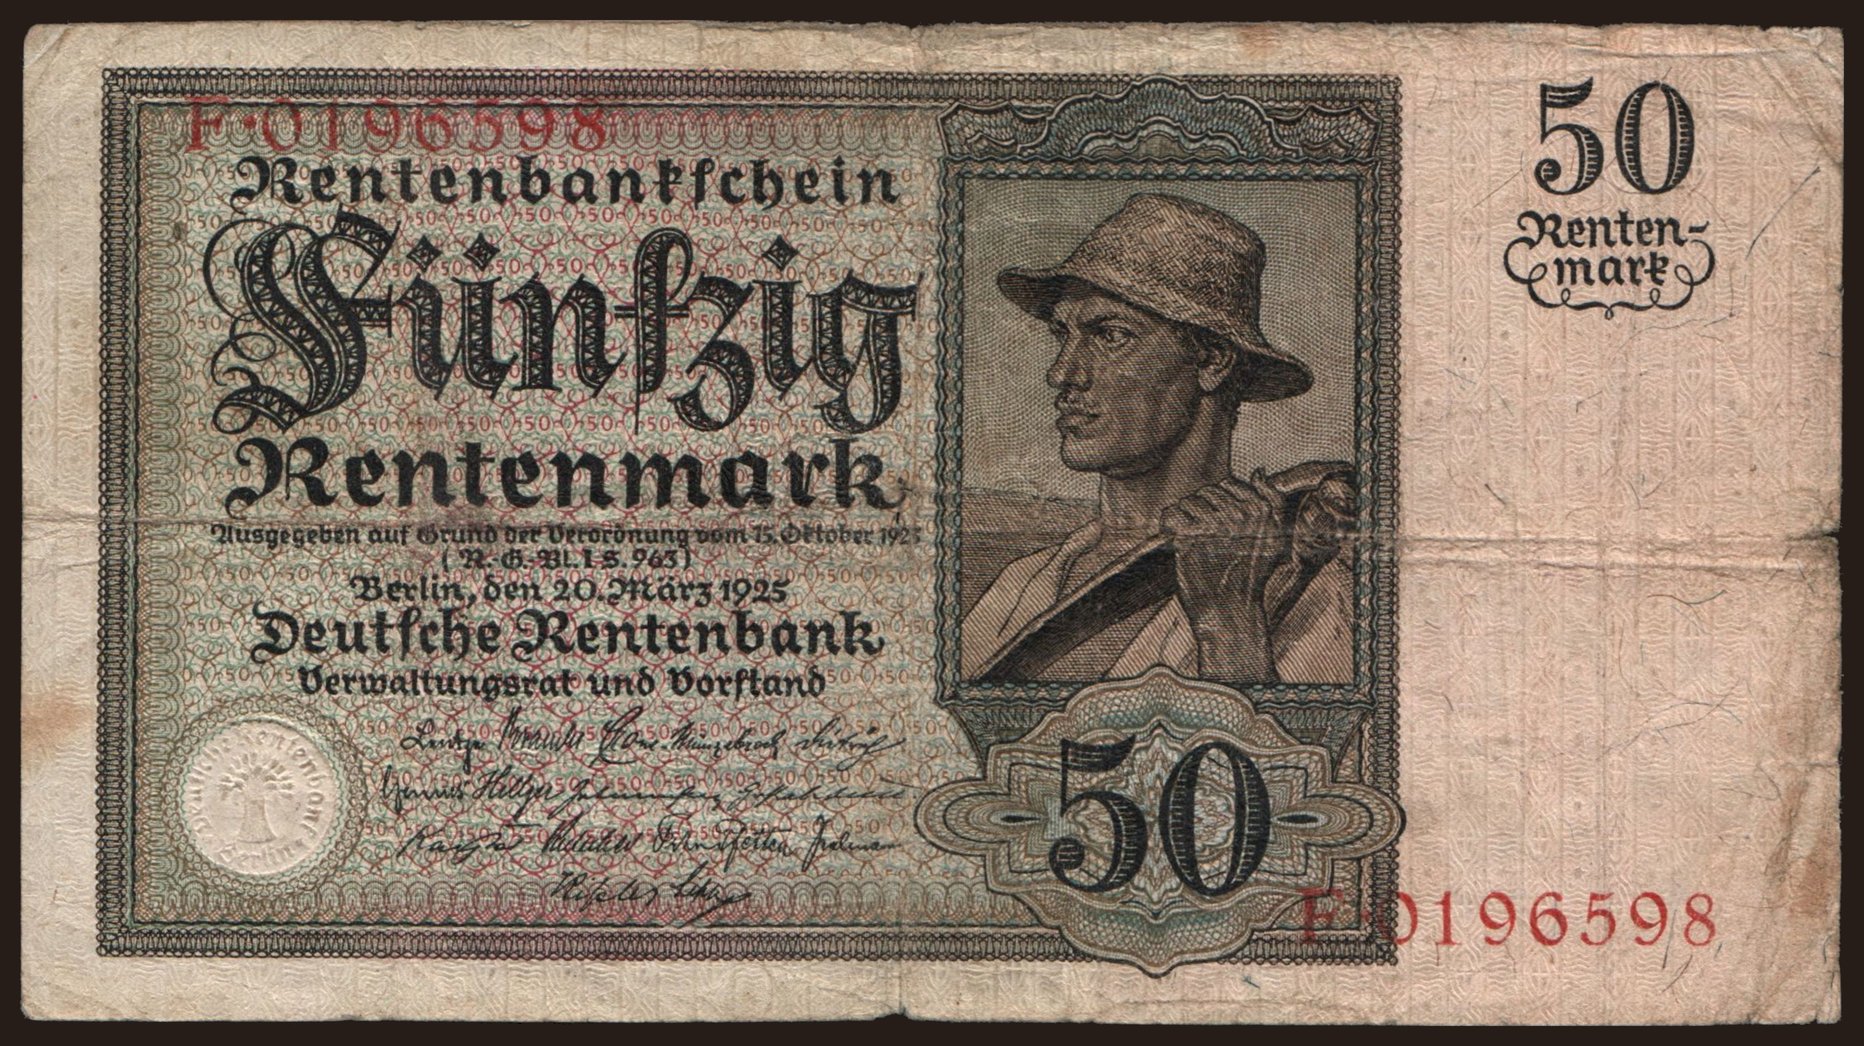 50 Rentenmark, 1925